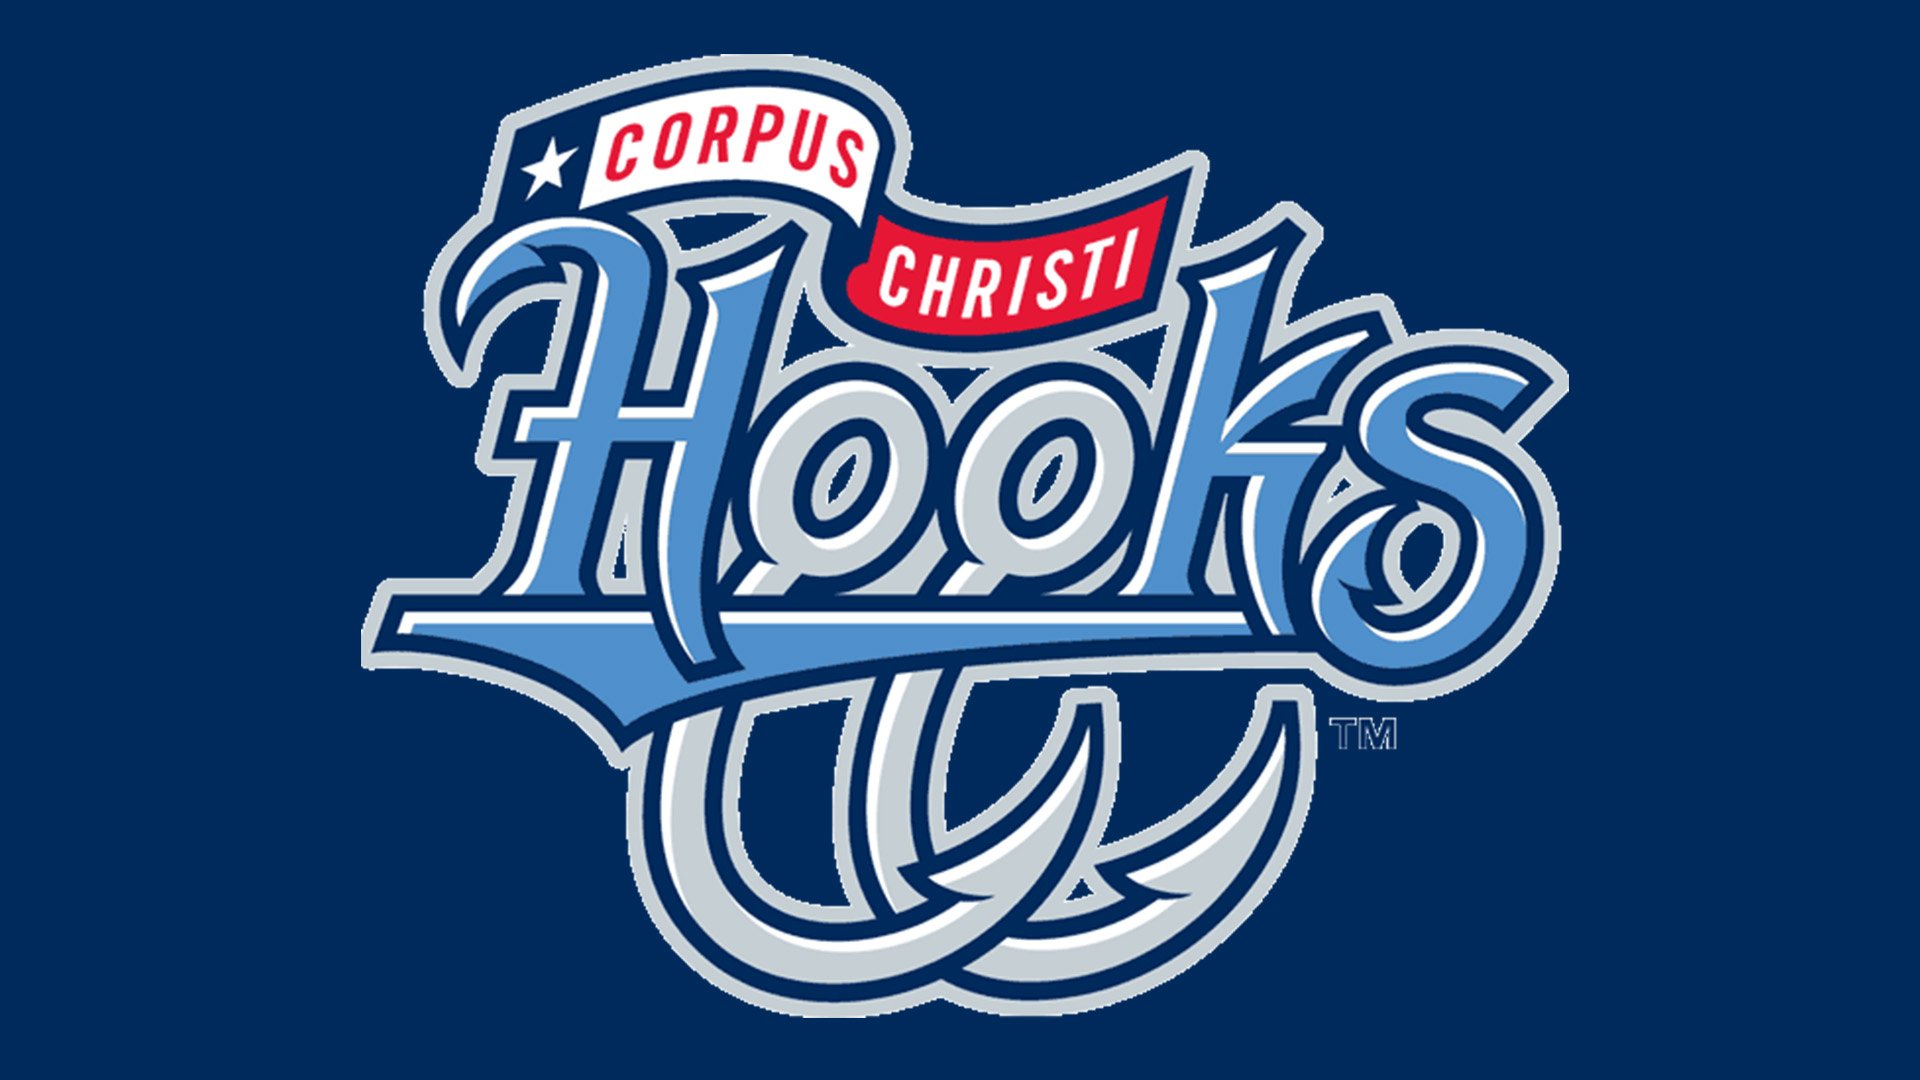 Corpus Christi Hooks, Corpus Christi, Texas